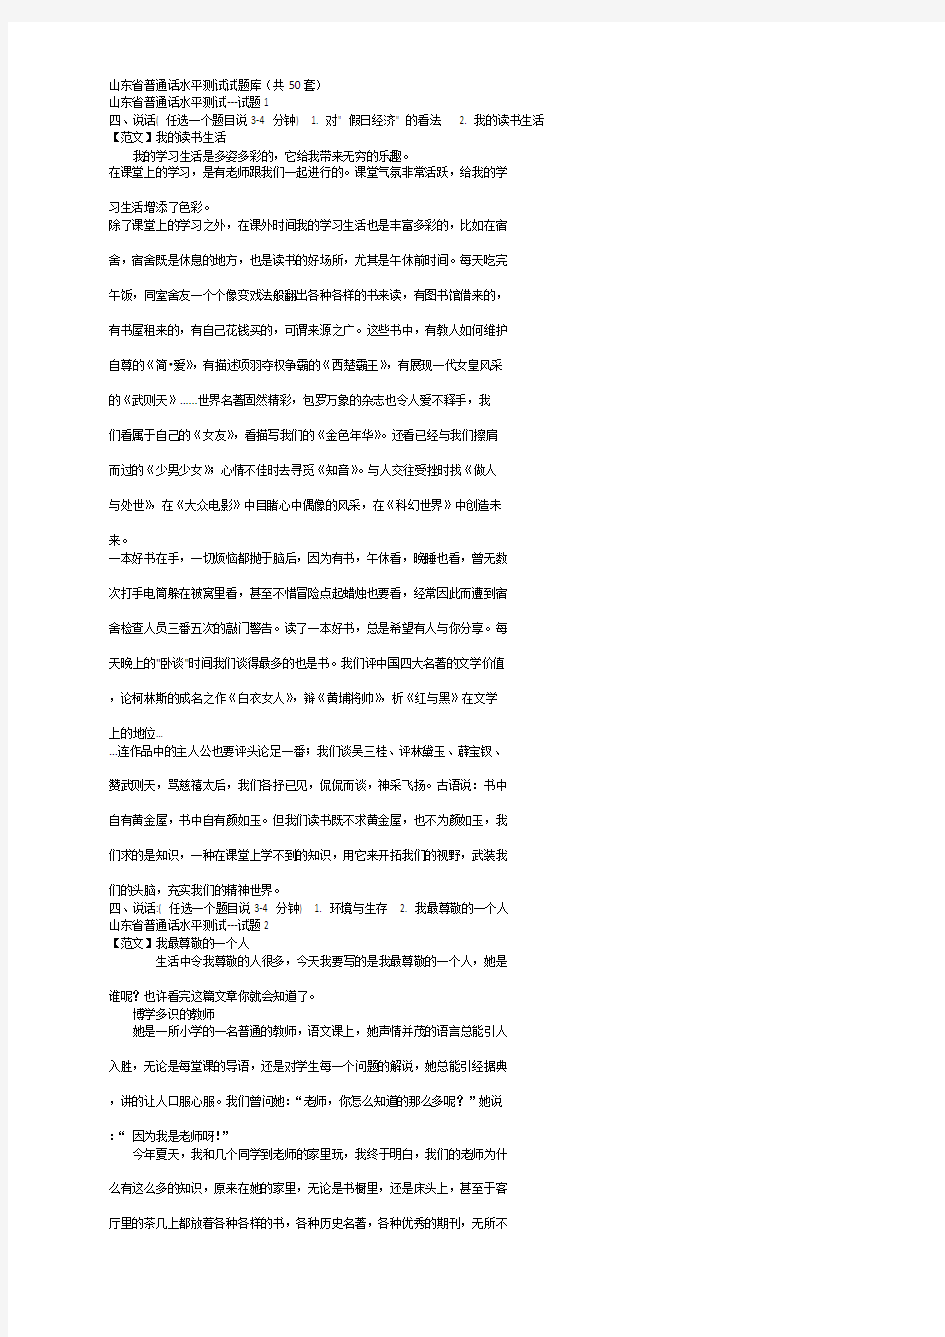 山东省普通话水平测试试题库-自由发挥部分(共50套)